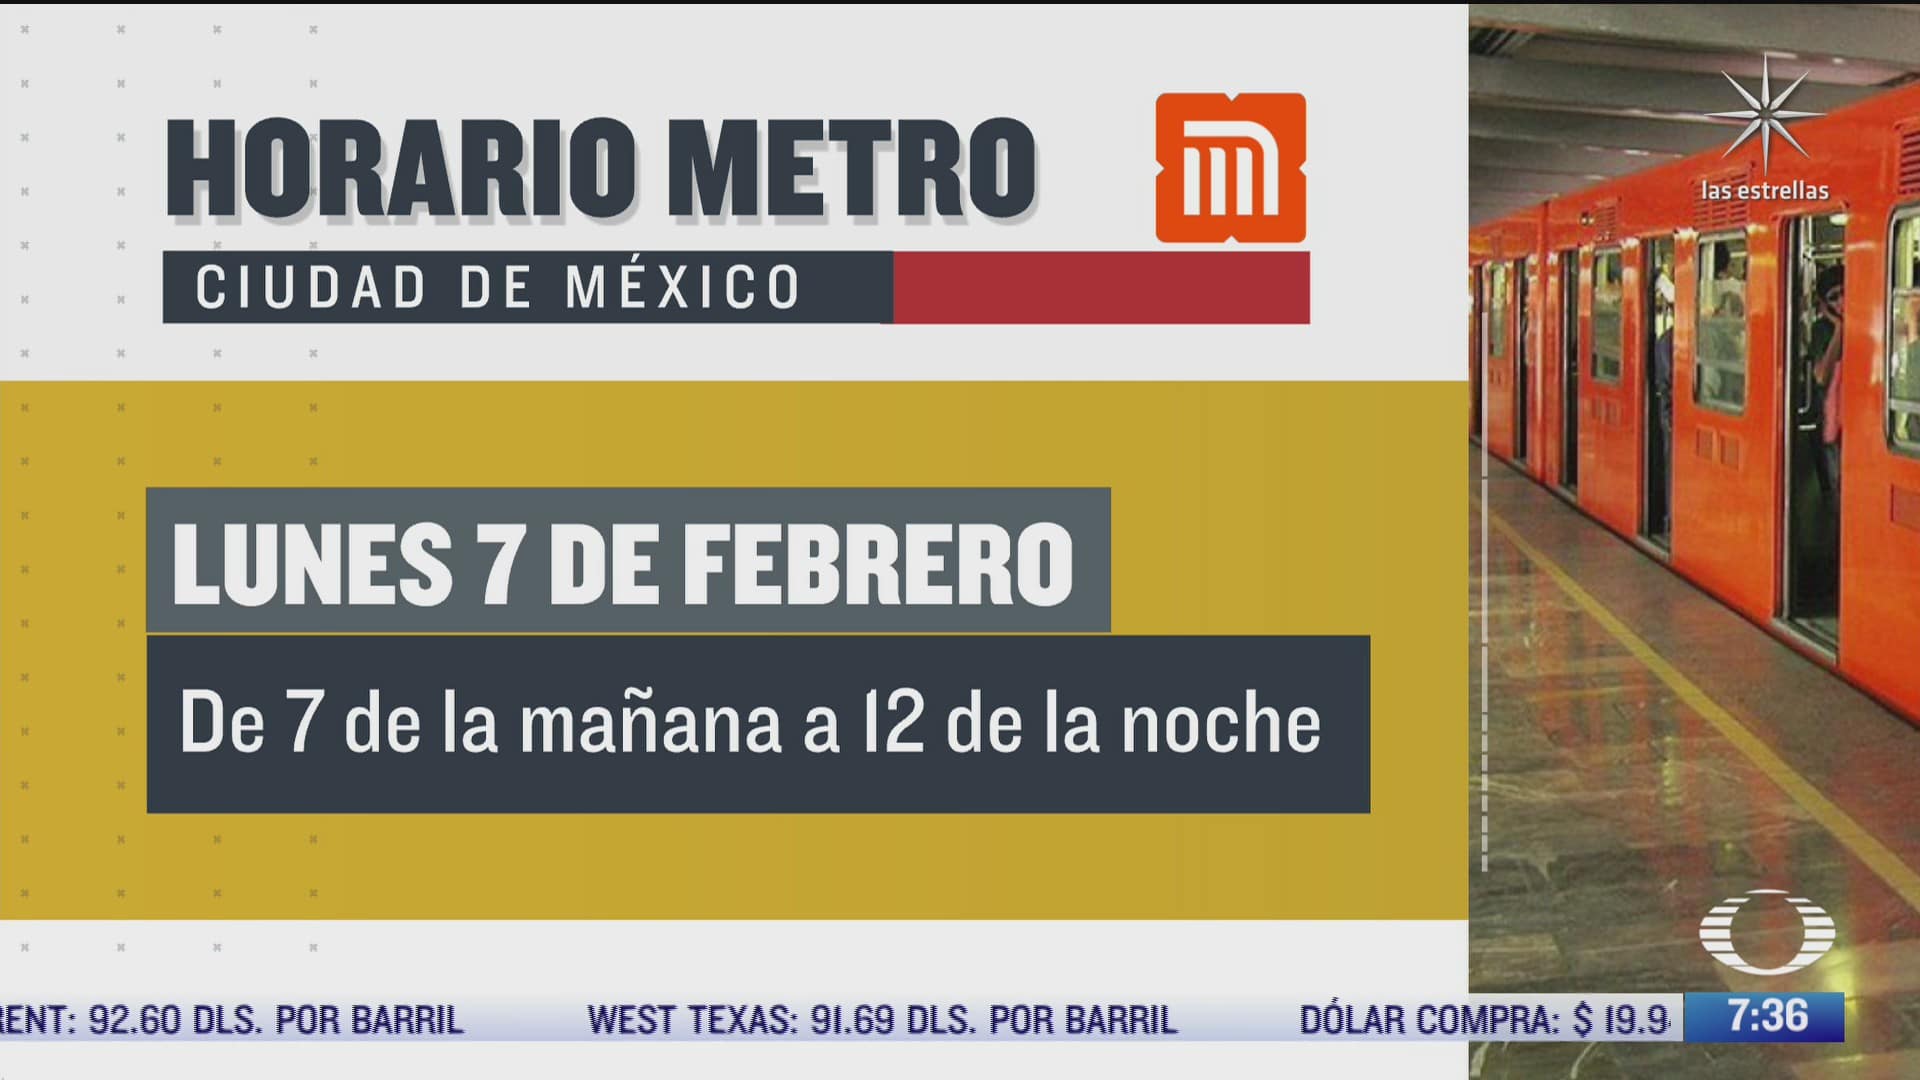 el metro cdmx tendra horario especial el 7 de febrero de 2022 por feriado de la constitucion mexicana